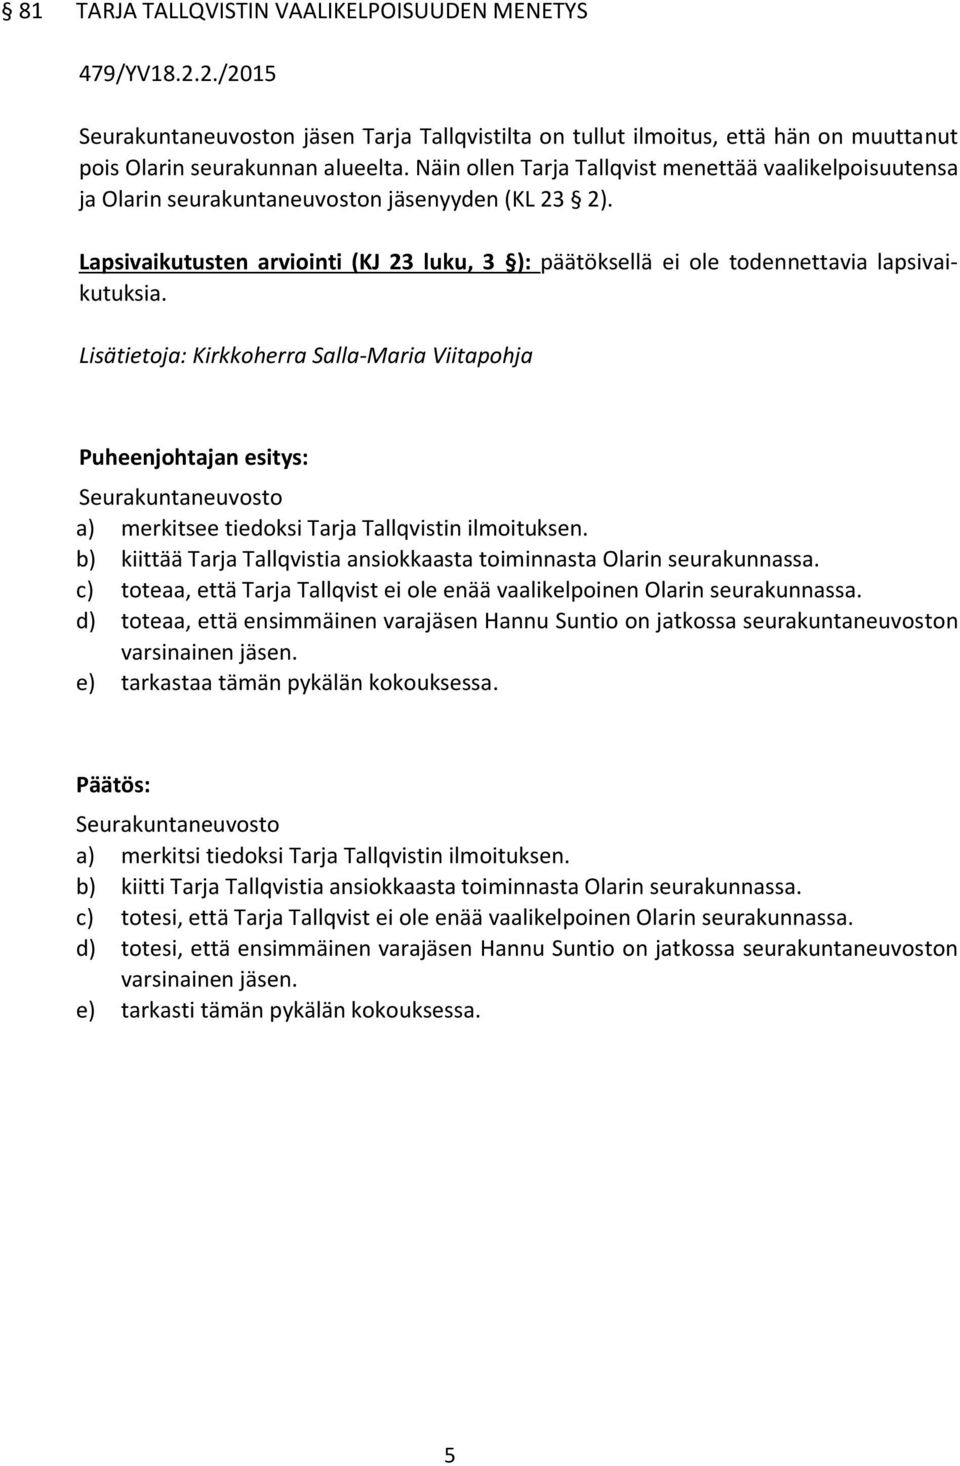 Seurakuntaneuvosto a) merkitsee tiedoksi Tarja Tallqvistin ilmoituksen. b) kiittää Tarja Tallqvistia ansiokkaasta toiminnasta Olarin seurakunnassa.